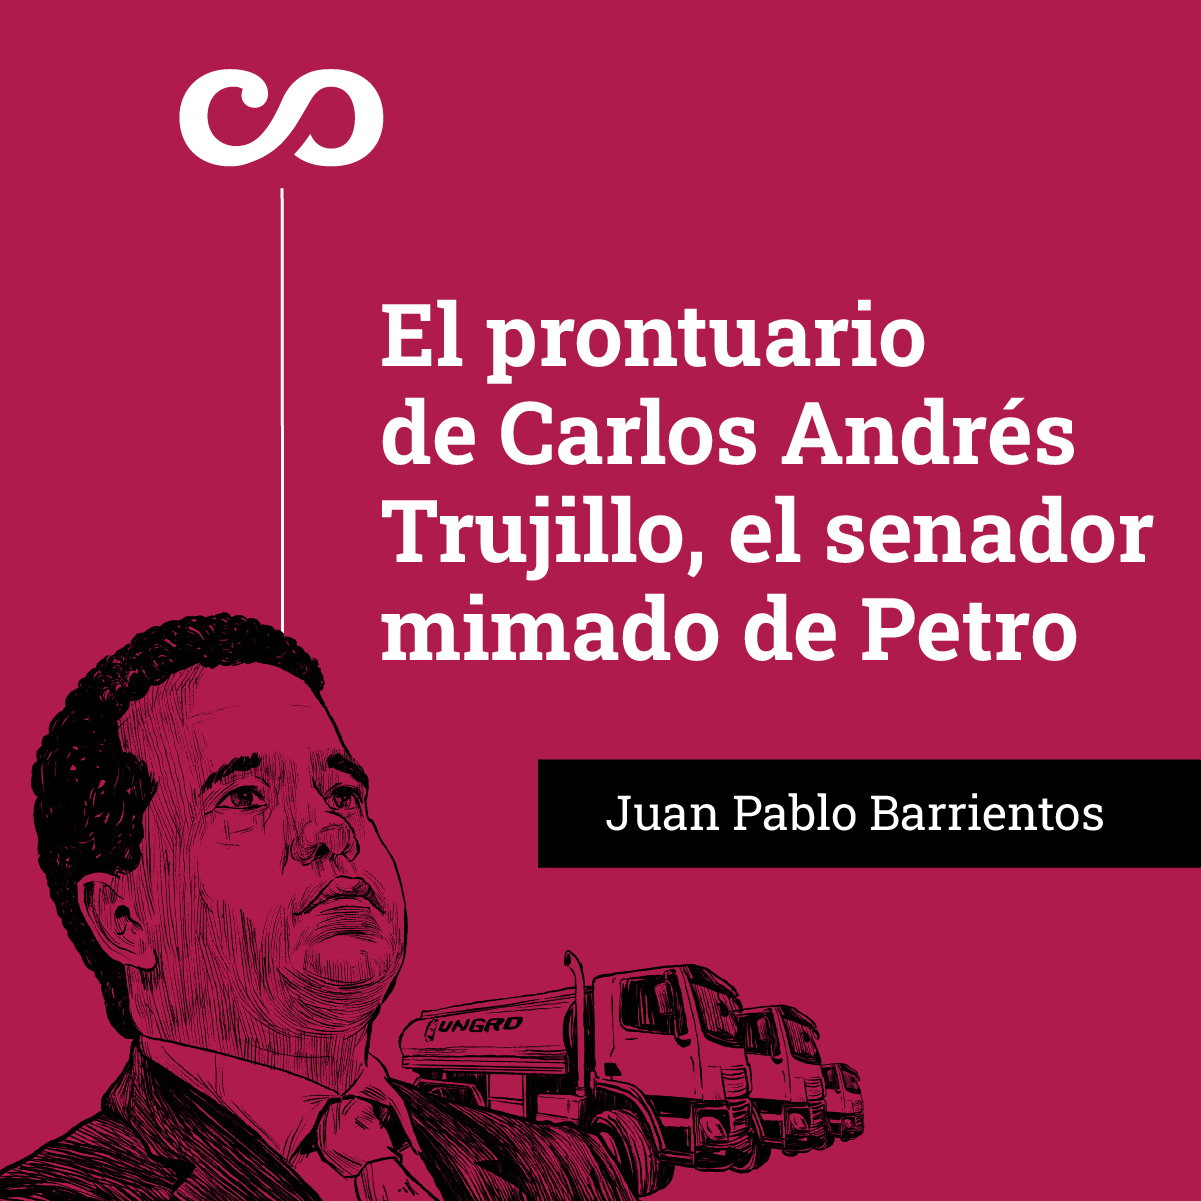 El prontuario de Carlos Andrés Trujillo, el senador mimado de Petro